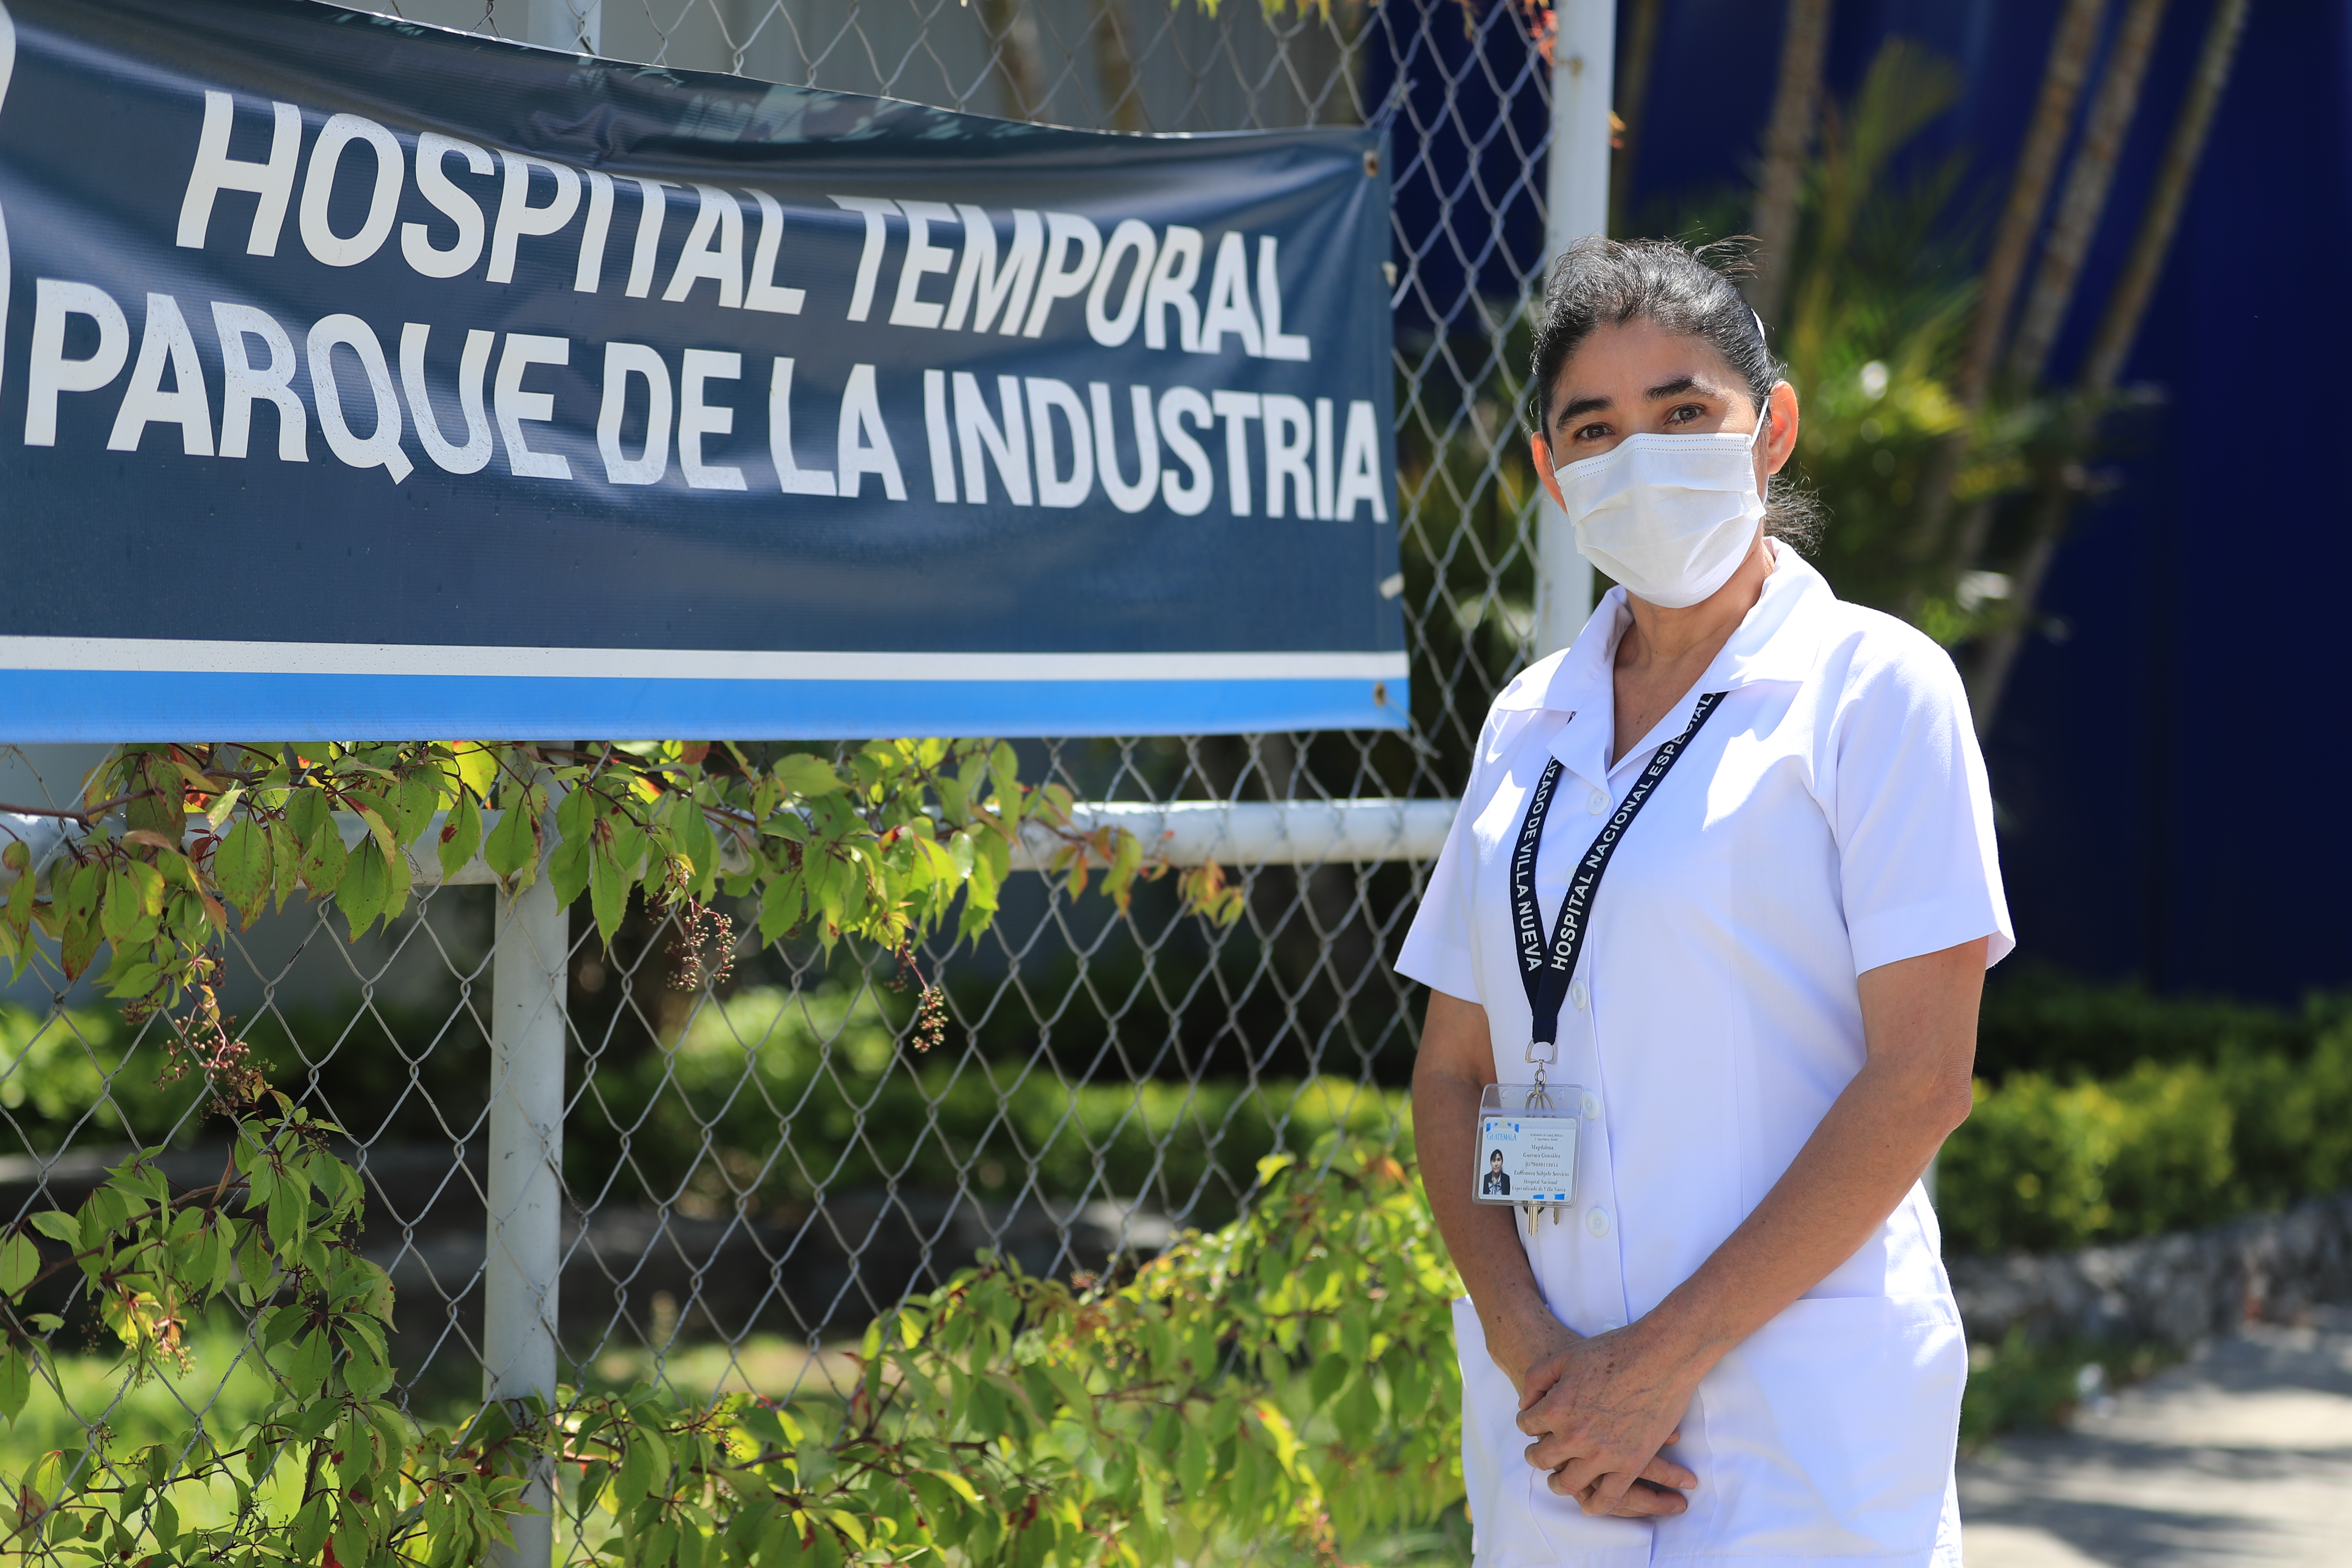  Magdalena Guevara González, de 46 años, es enfermera en el Hospital Temporal Parque de la Industria y fue la primera persona en Guatemala en recibir la vacuna contra el coronavirus. (Foto Prensa Libre: Juan Diego González) 